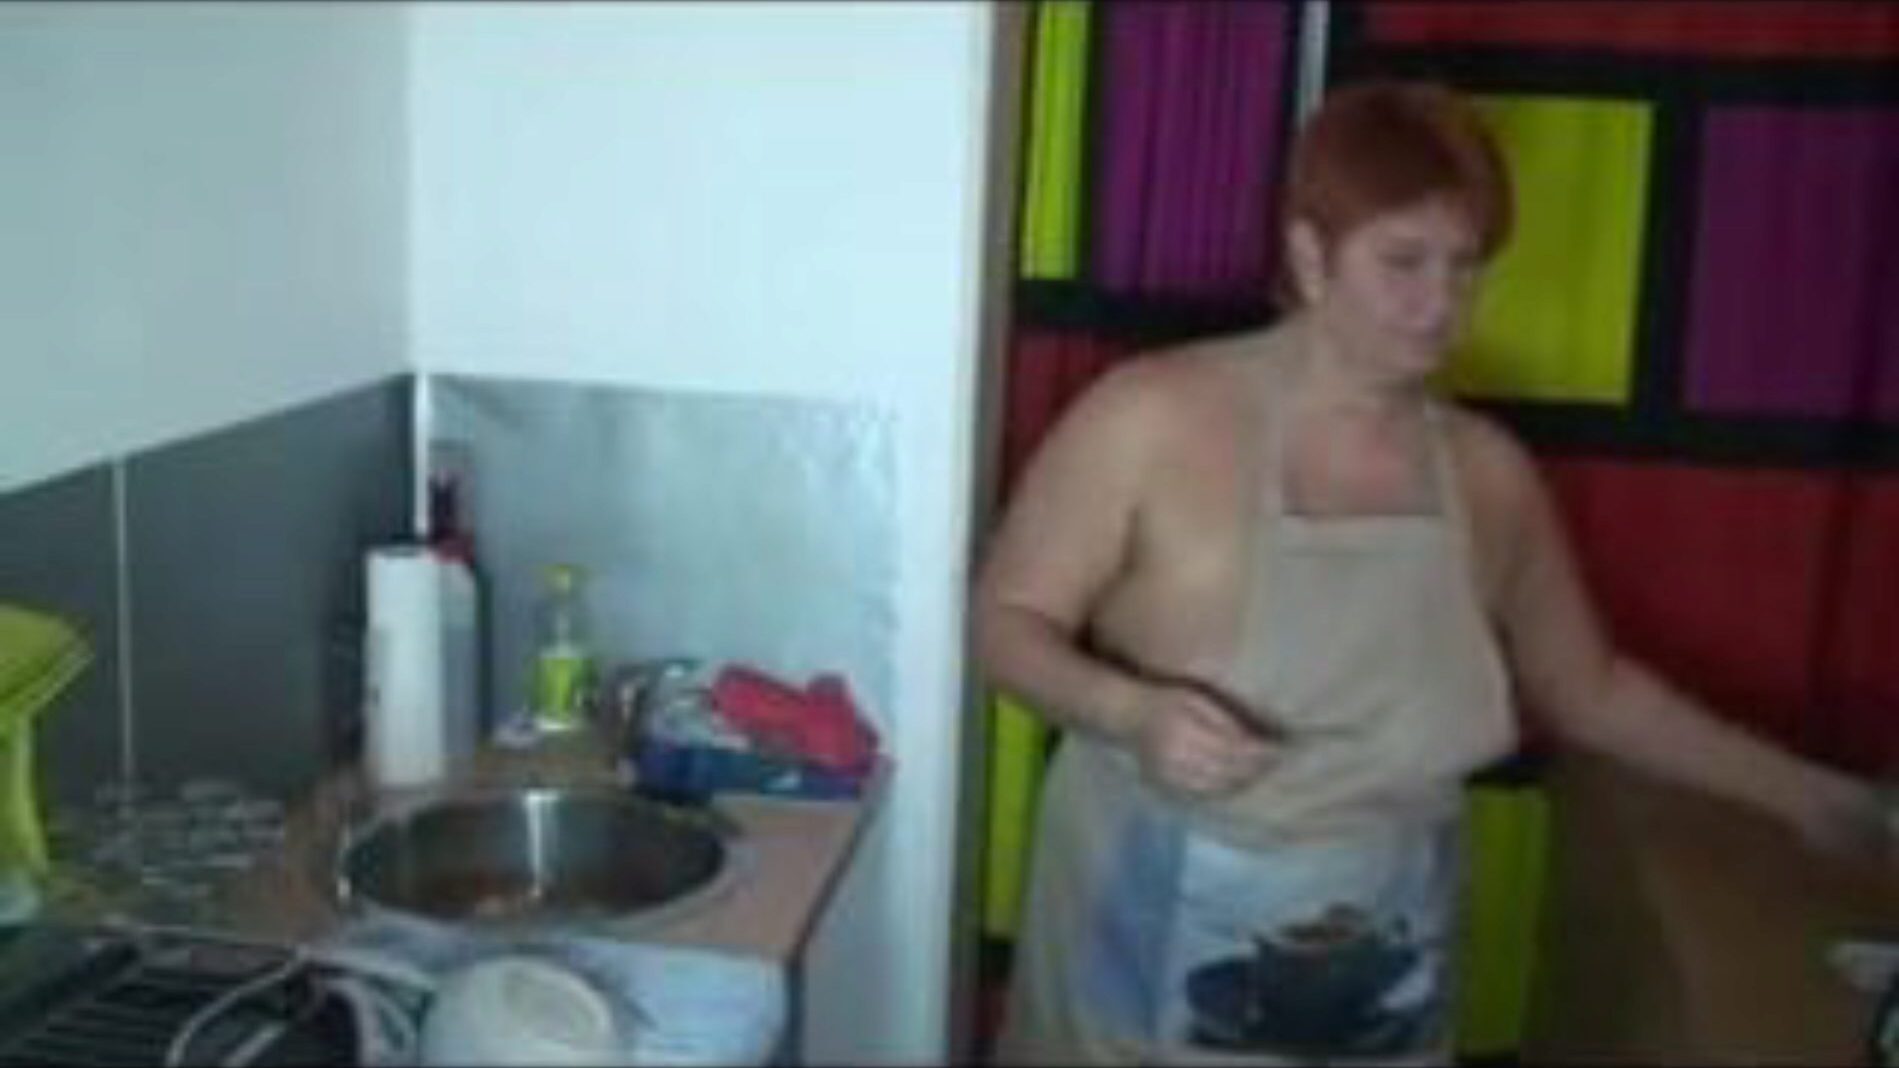 quand laver la vaisselle dans la cuisine, porno gratuit 55: xhamster regarde quand laver la vaisselle dans la cuisine clip sur xhamster, le site de tube de sexe géant avec des tonnes de vidéos porno allemandes les plus chaudes et les plus sonores